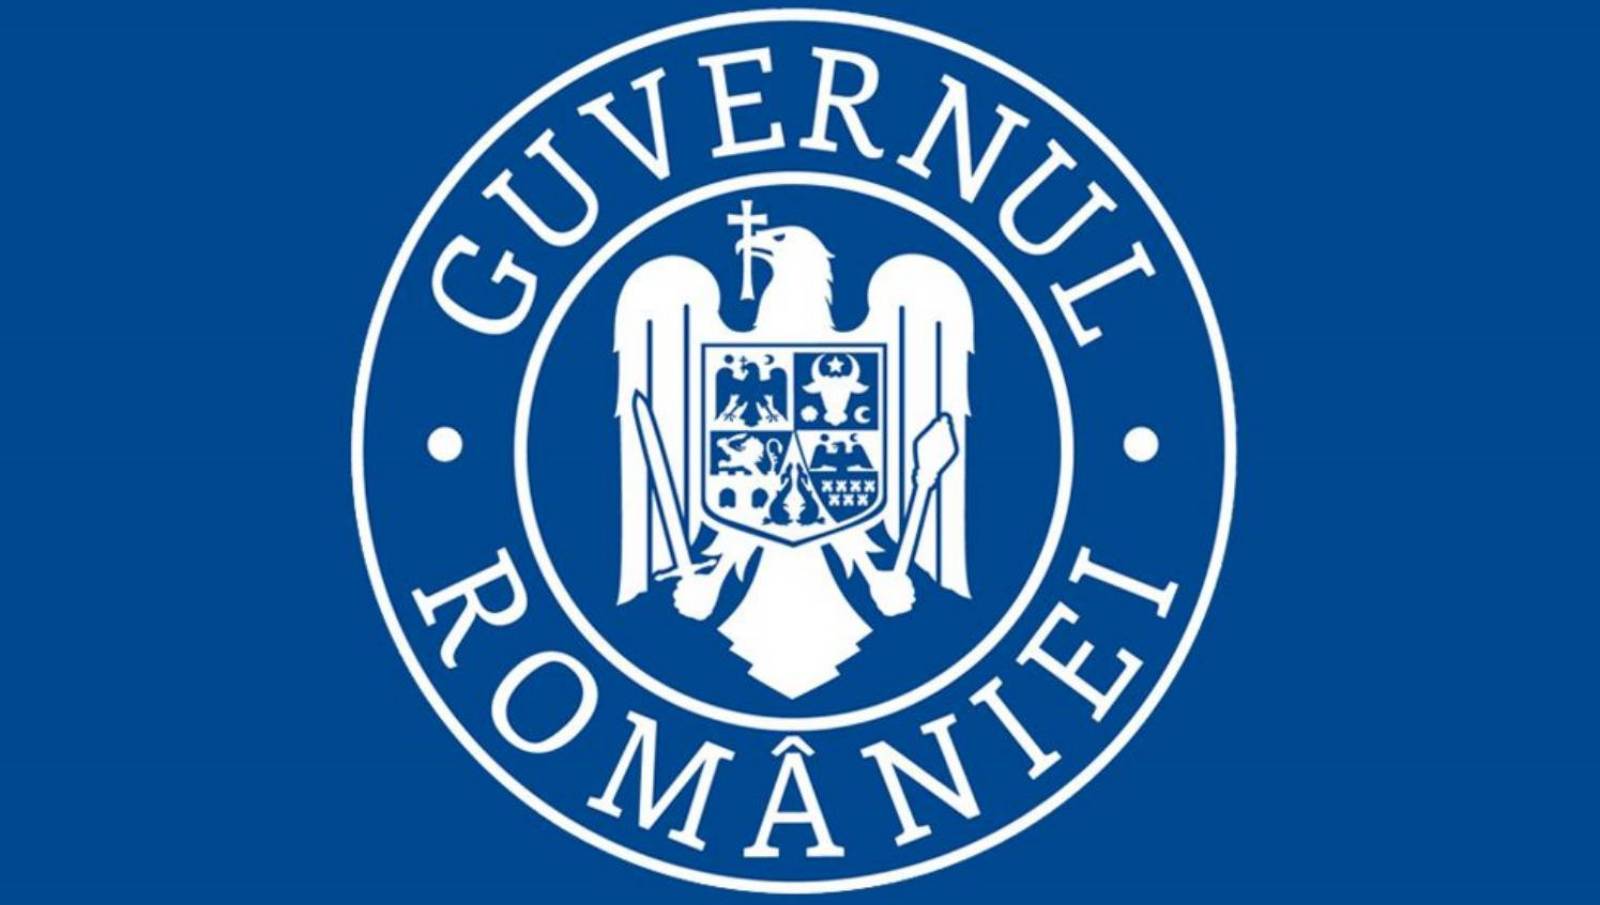 De Roemeense overheid waarschuwt cyberveiligheid